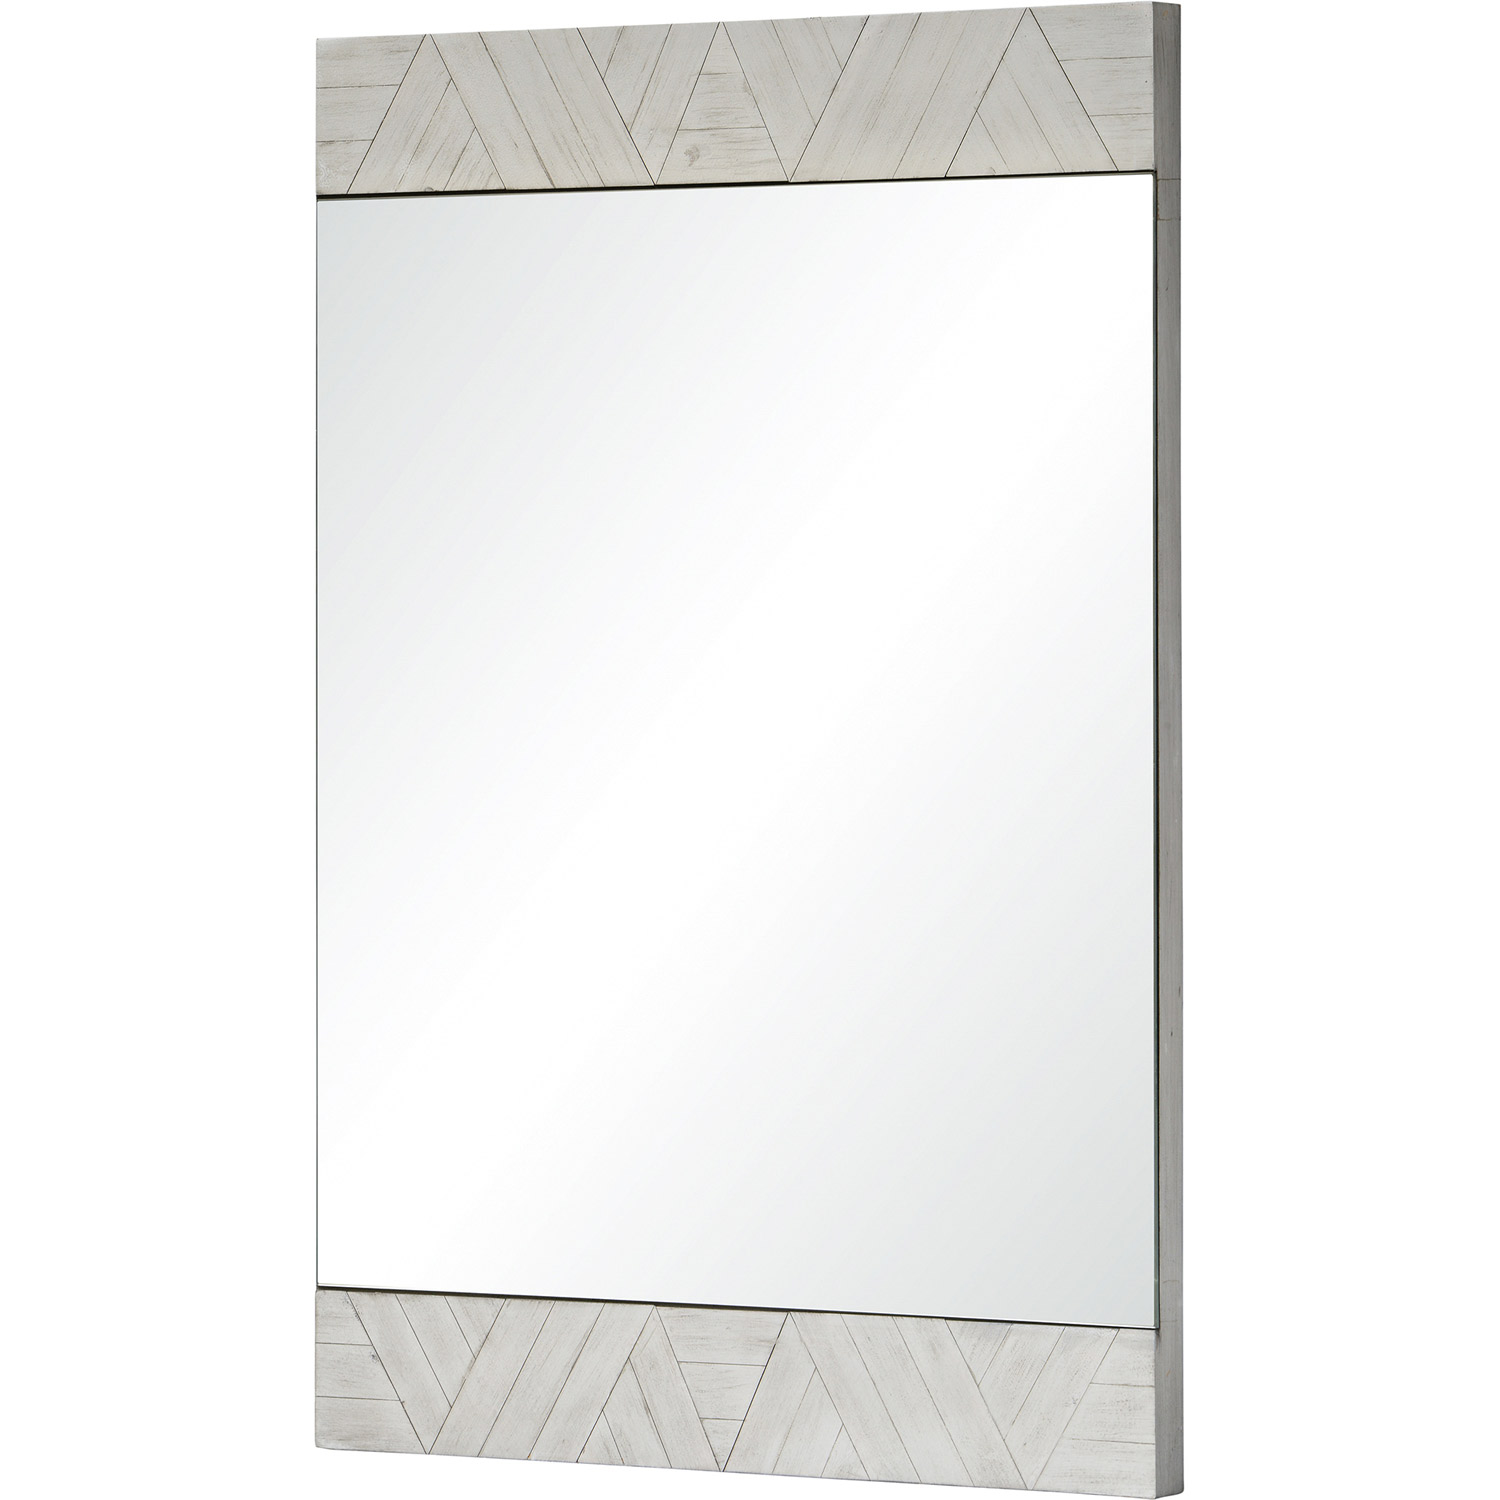 Ren-Wil Brierwood Rectangle Mirror - White Wash